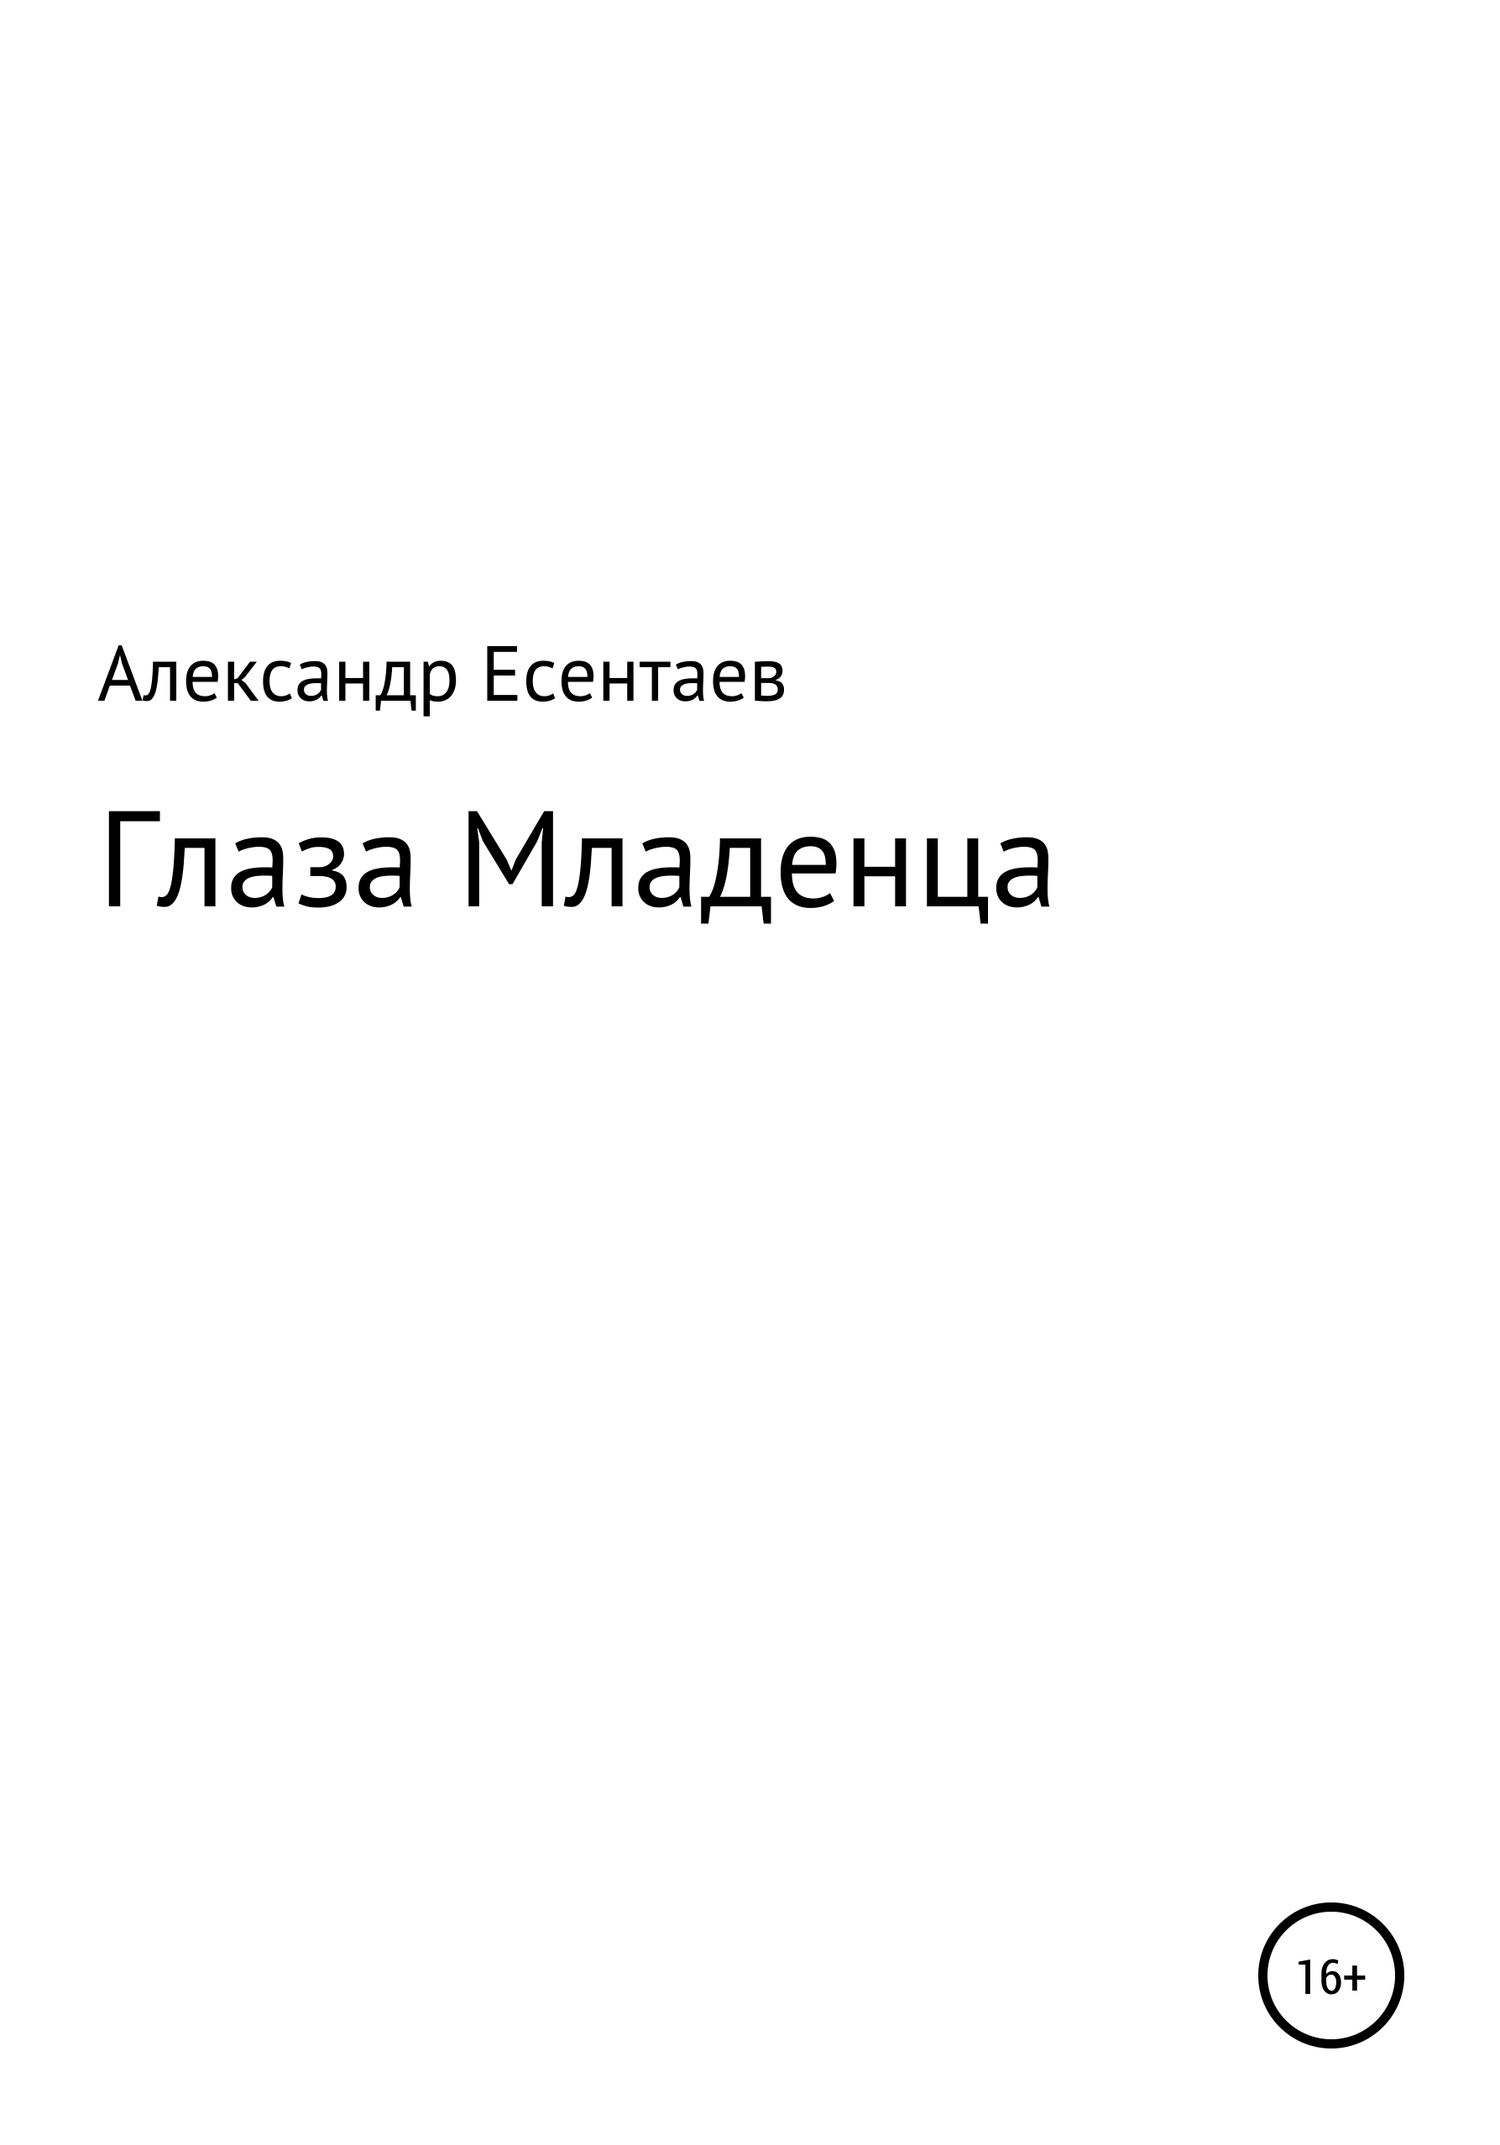 Глаза Младенца - Александр Есентаев